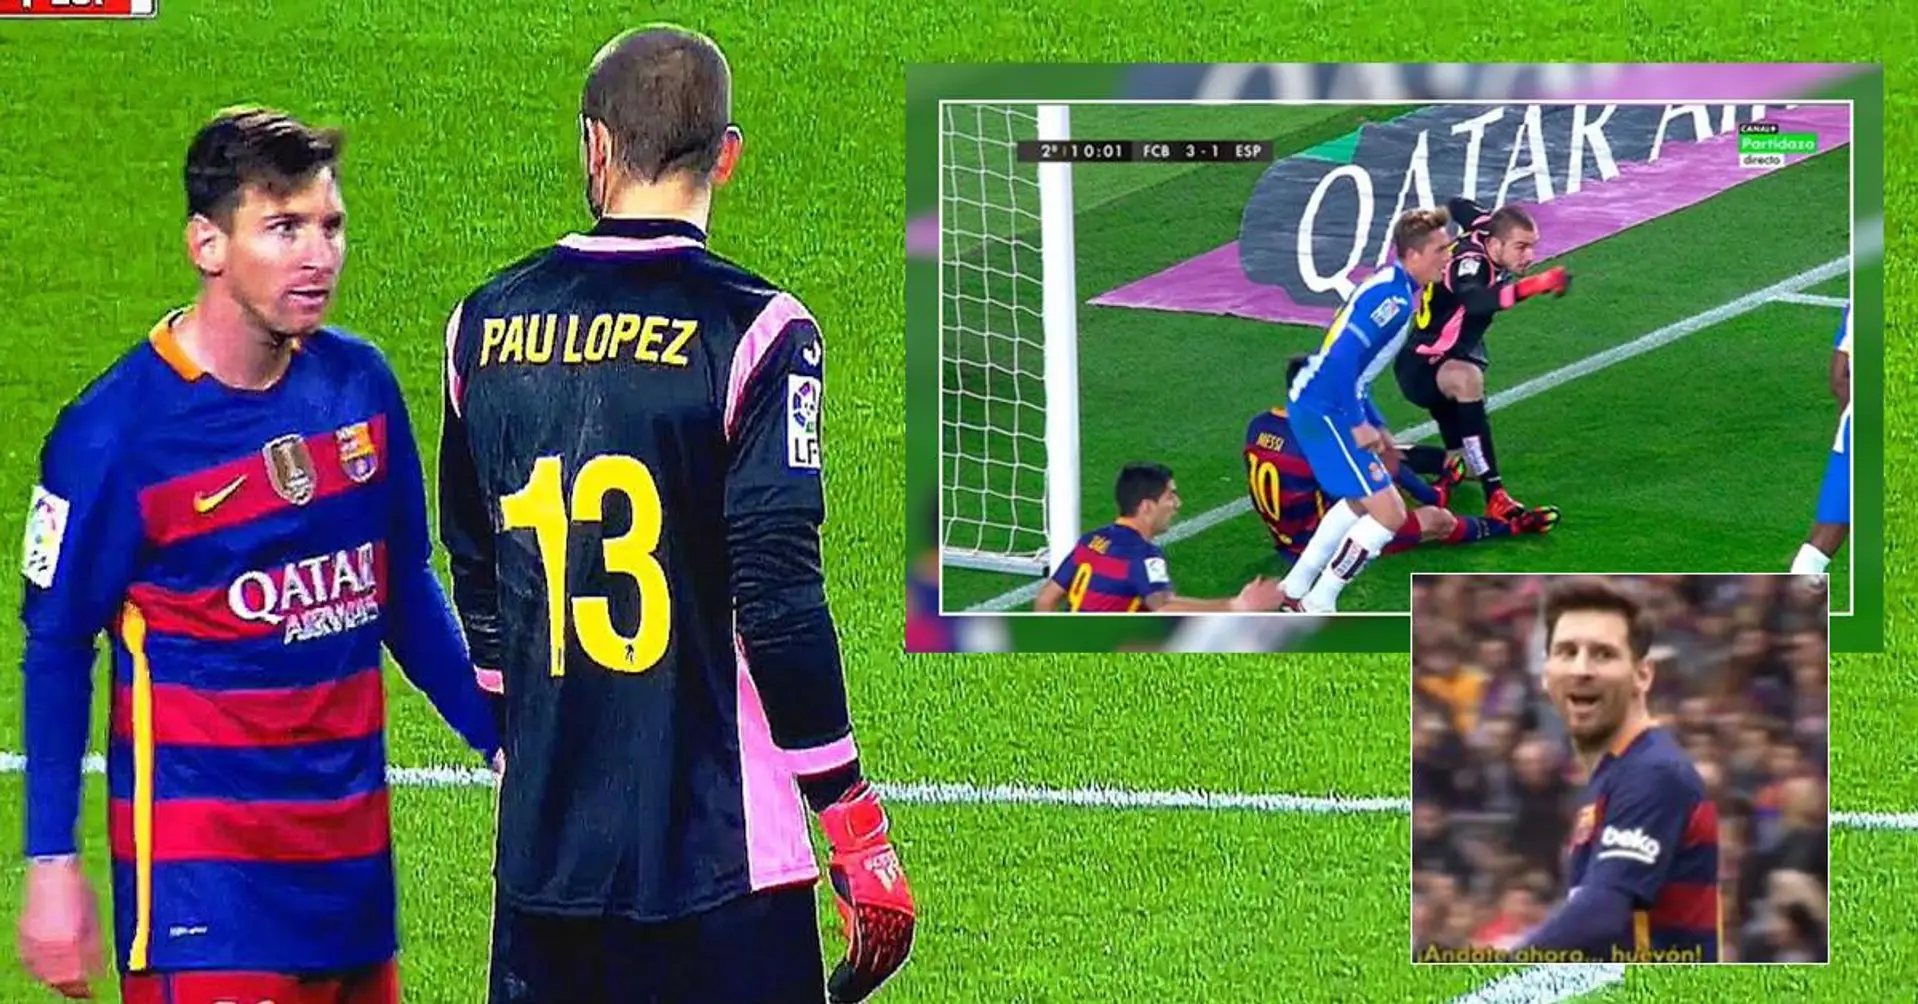 "Geh weiter, Idiot": Was zwischen Lionel Messi und dem 21-jährigen Torwart Pau Lopez geschah